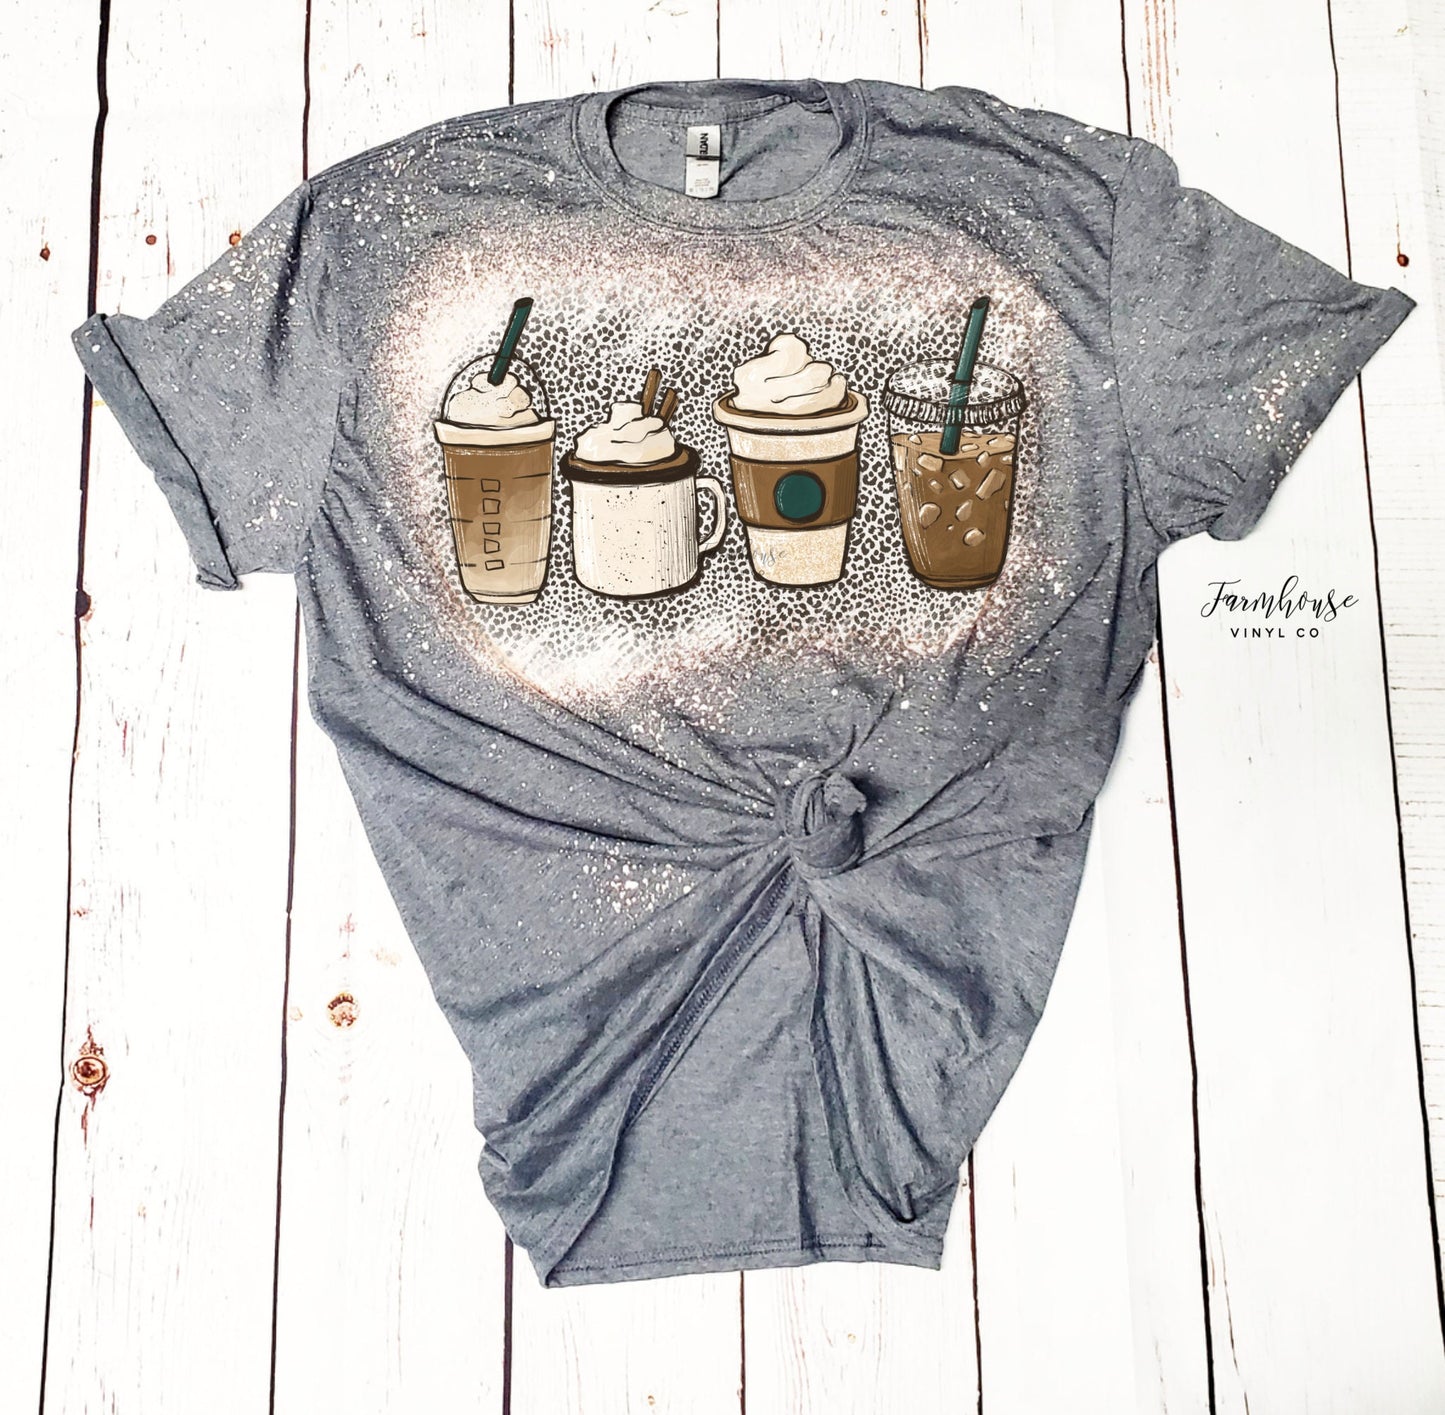 Coffee Leopard Starbies Tee Shirt / BOHO Vintage Sweatshirt Tee / Mom and Me Shirt / Trendy Retro Coffee T Shirt - Farmhouse Vinyl Co